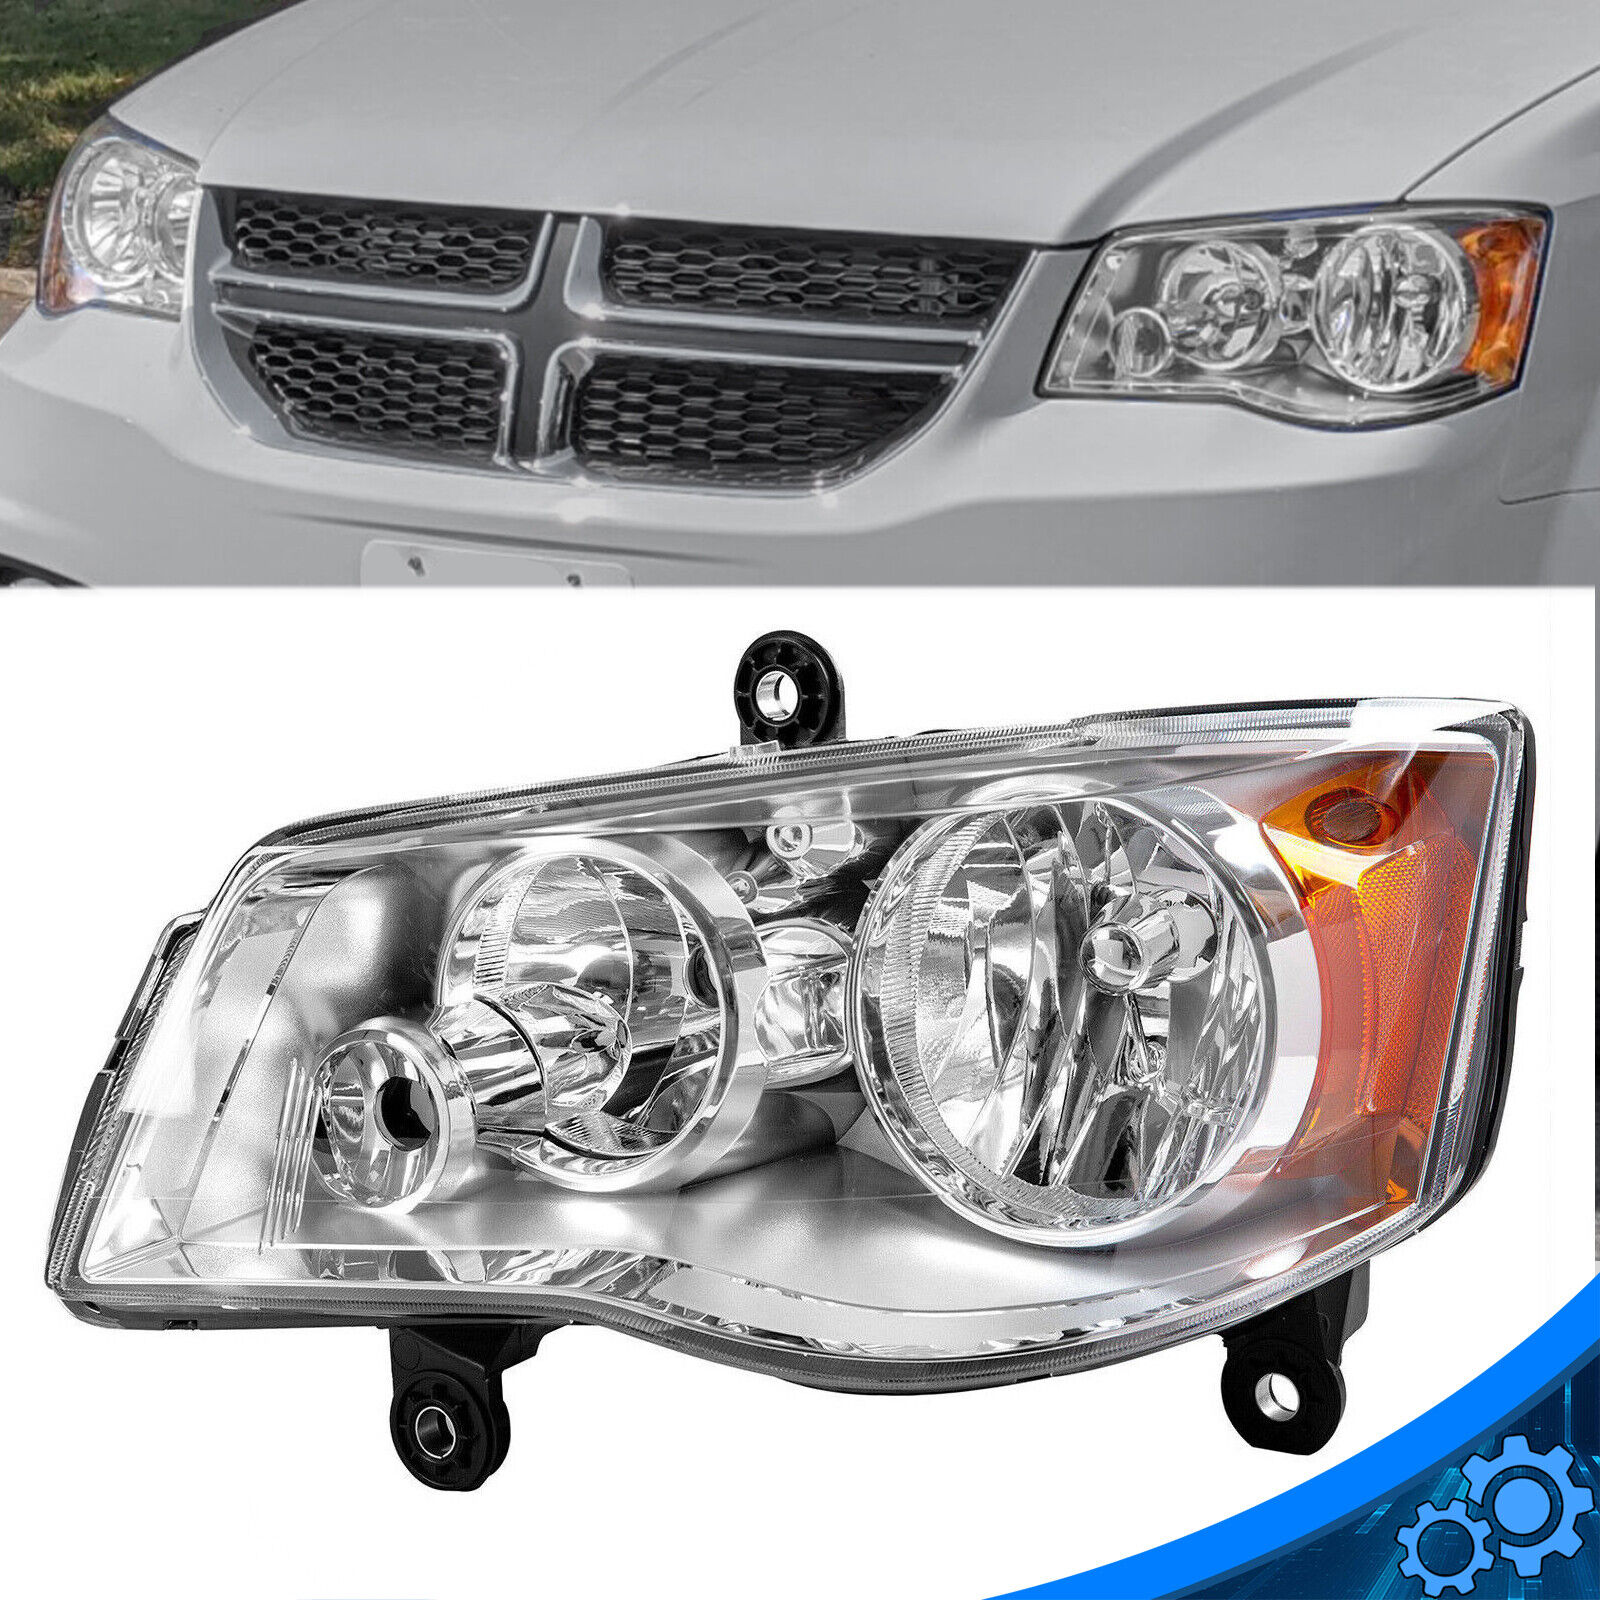 Headlight Left Side For 11-20 Dodge Grand Caravan 08-16 Chrysler Town & Country